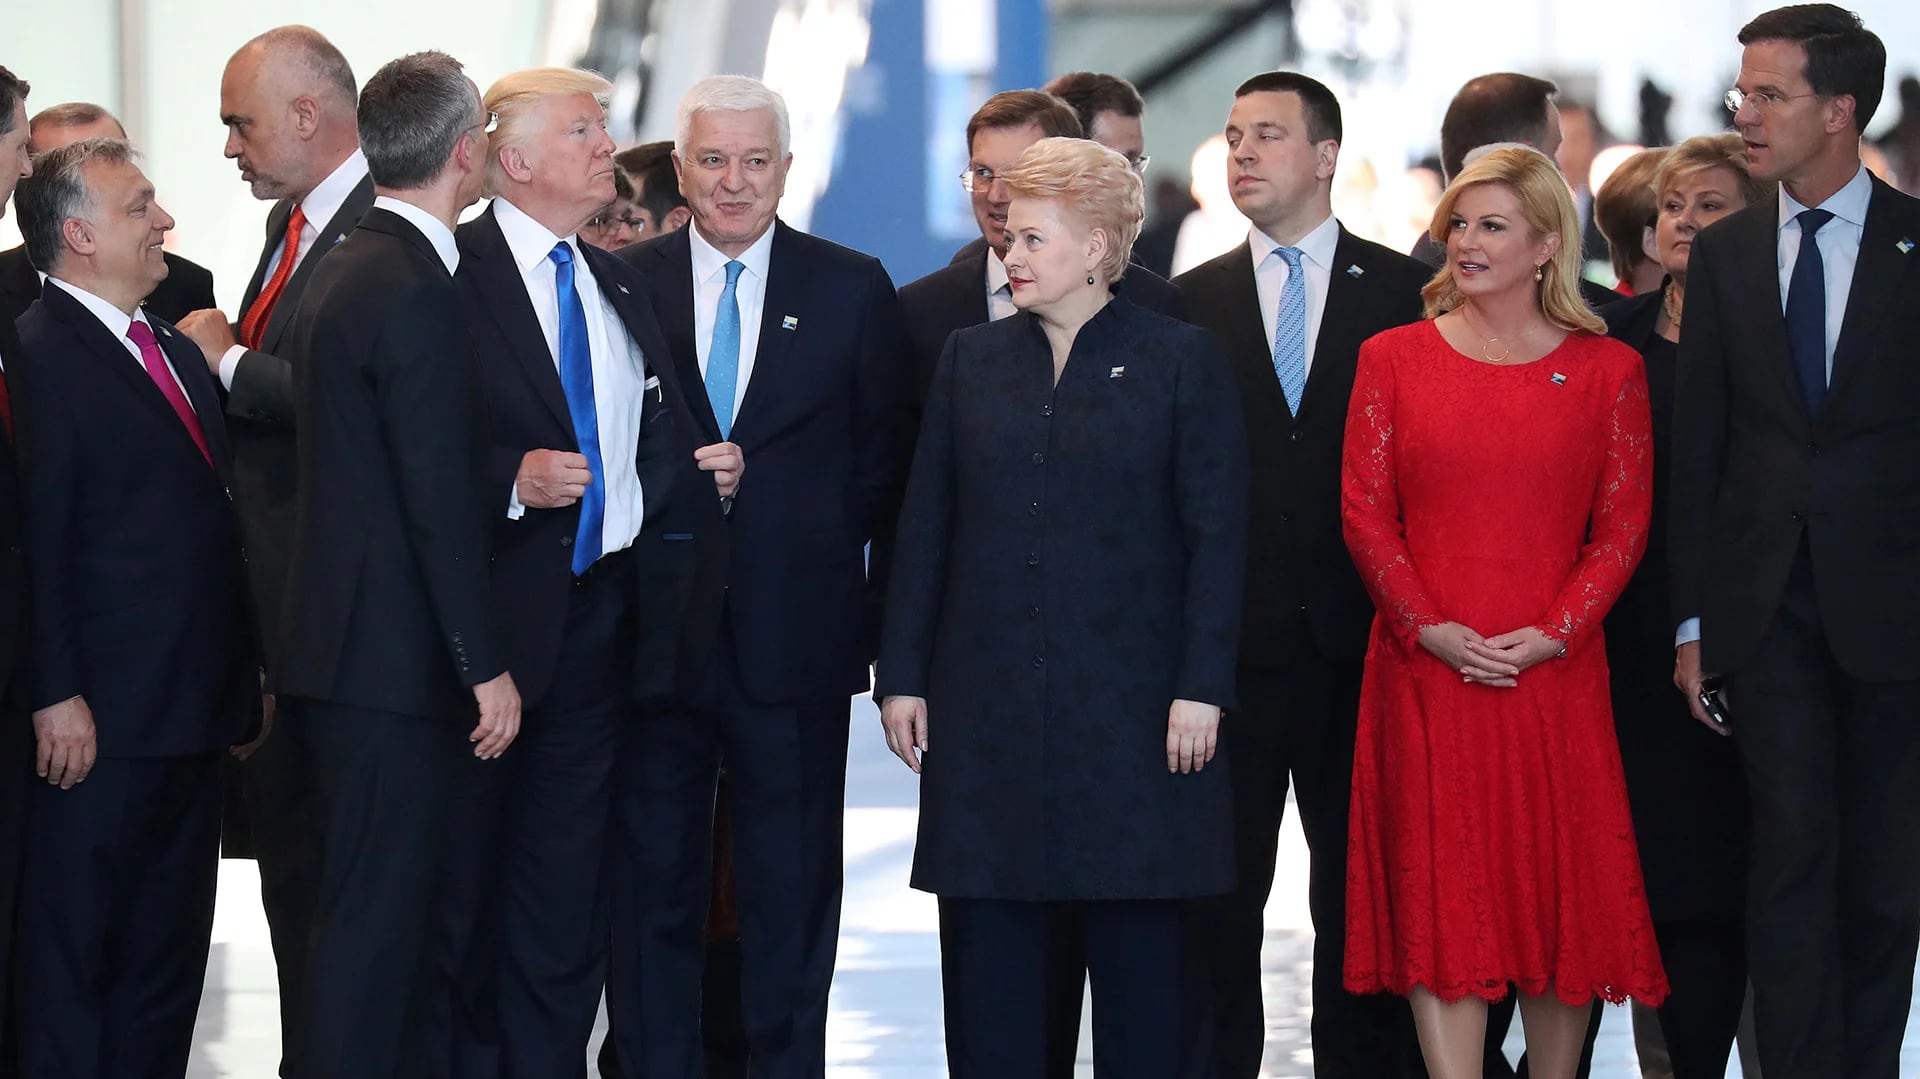 En un gesto de autoridad, el presidente de Estados Unidos acomoda su traje luego de empujar al primer ministro de Montenegro para ocupar su puesto en la foto familiar de la alianza (Reuters)